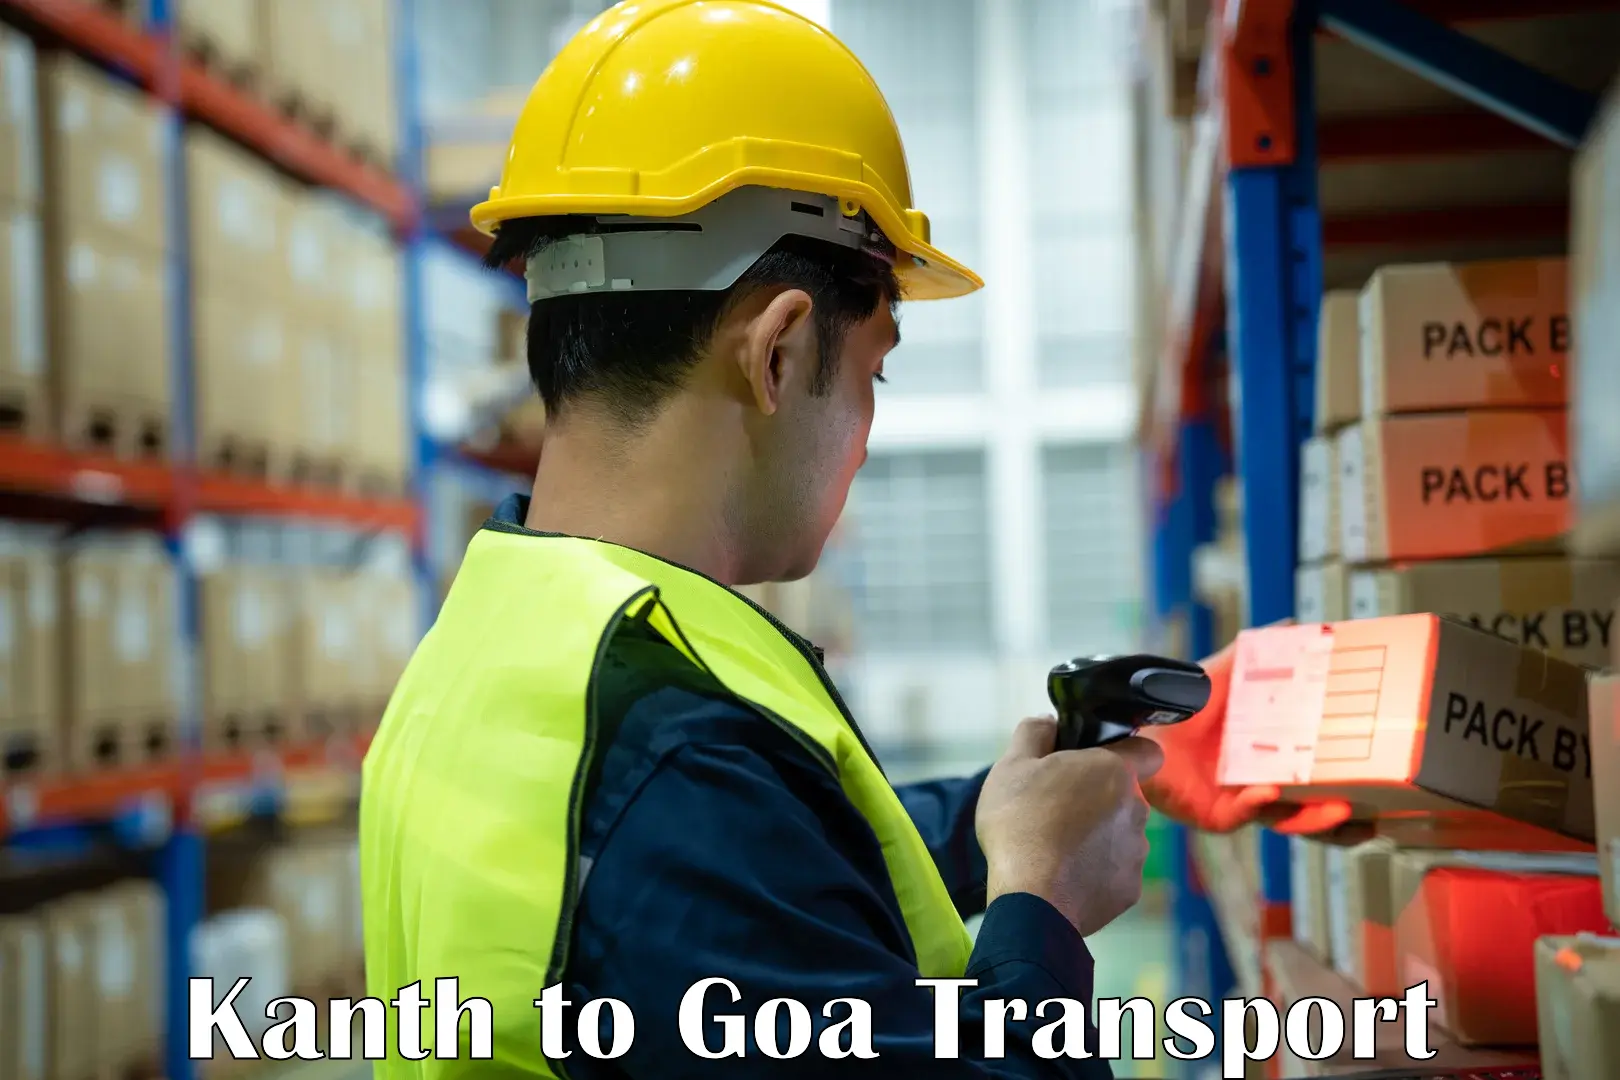 Nearest transport service Kanth to Panjim